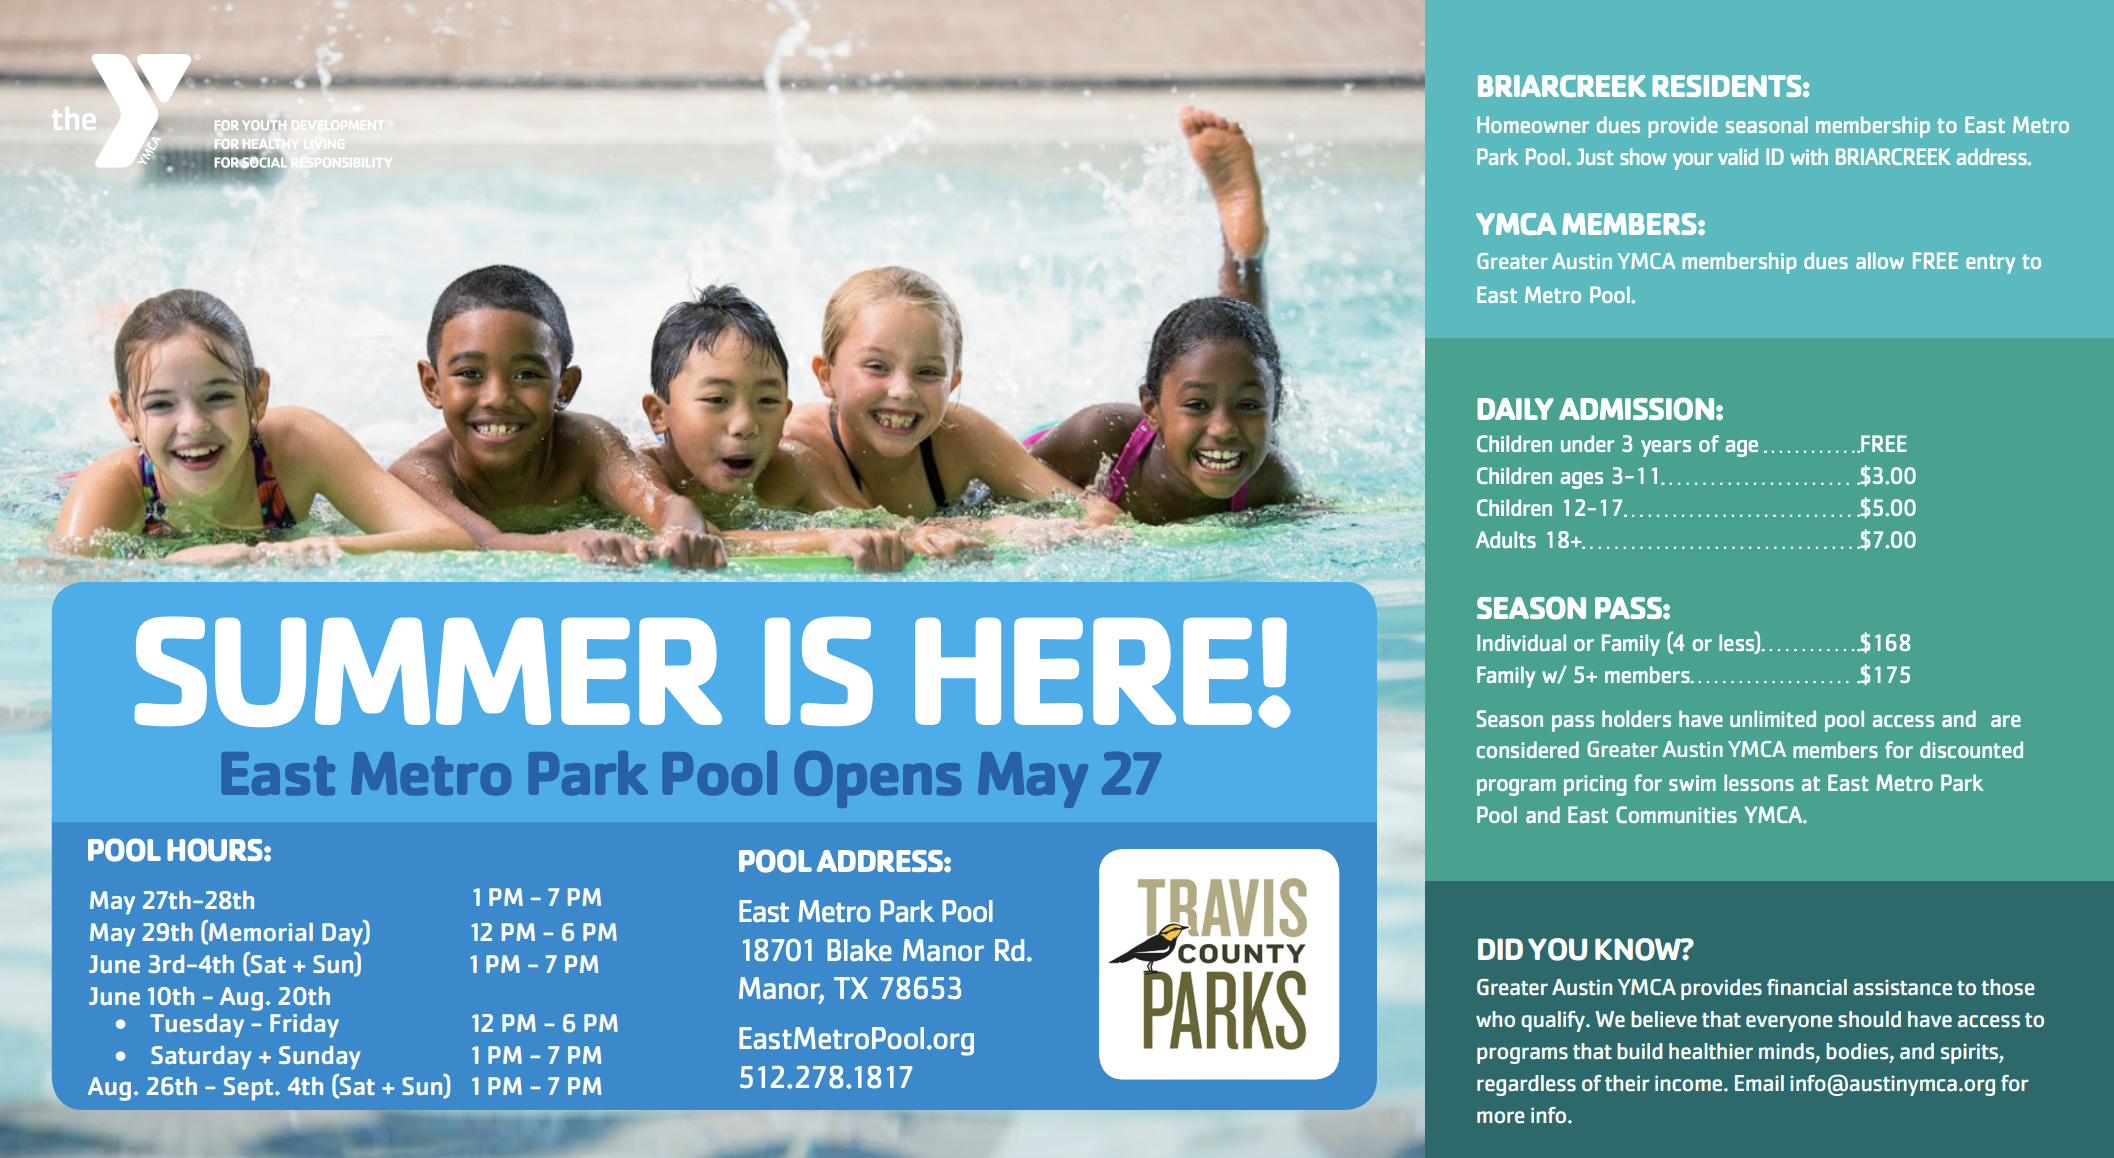 East Metropolitan Park Pool Hours